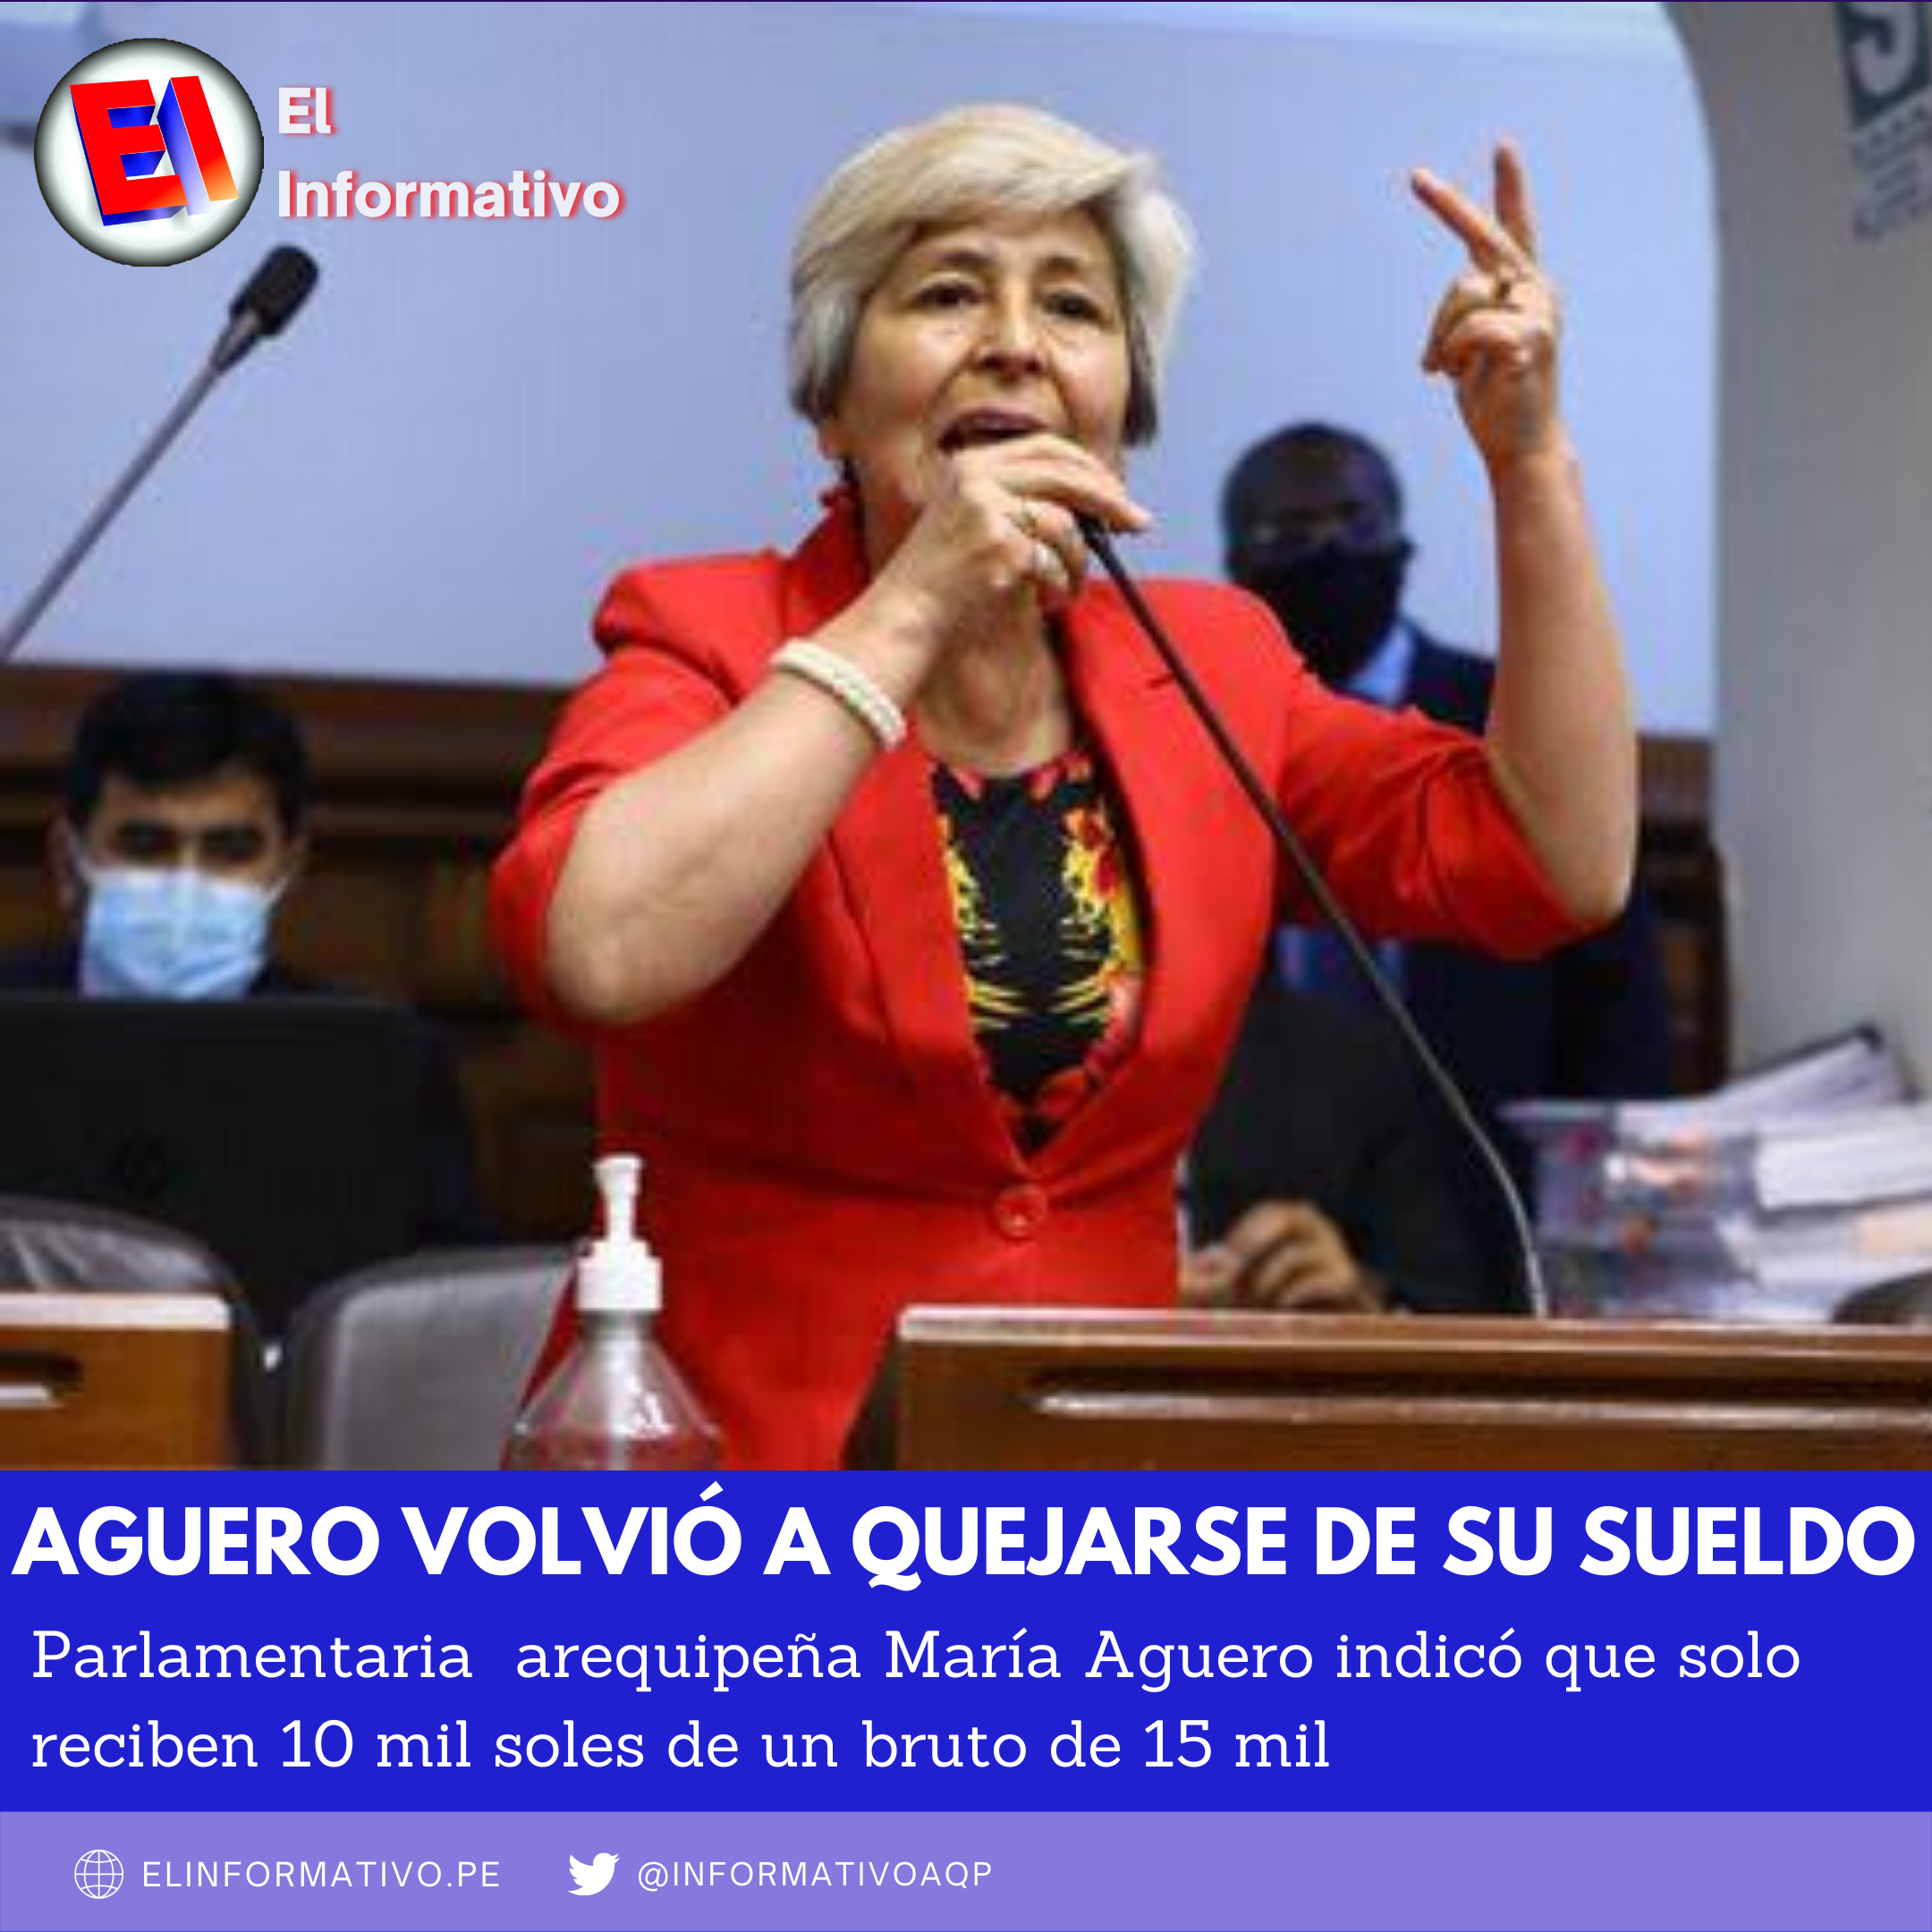 VIDEO. Congresista María Agüero vuelve a mencionar que solo gana 10 mil soles